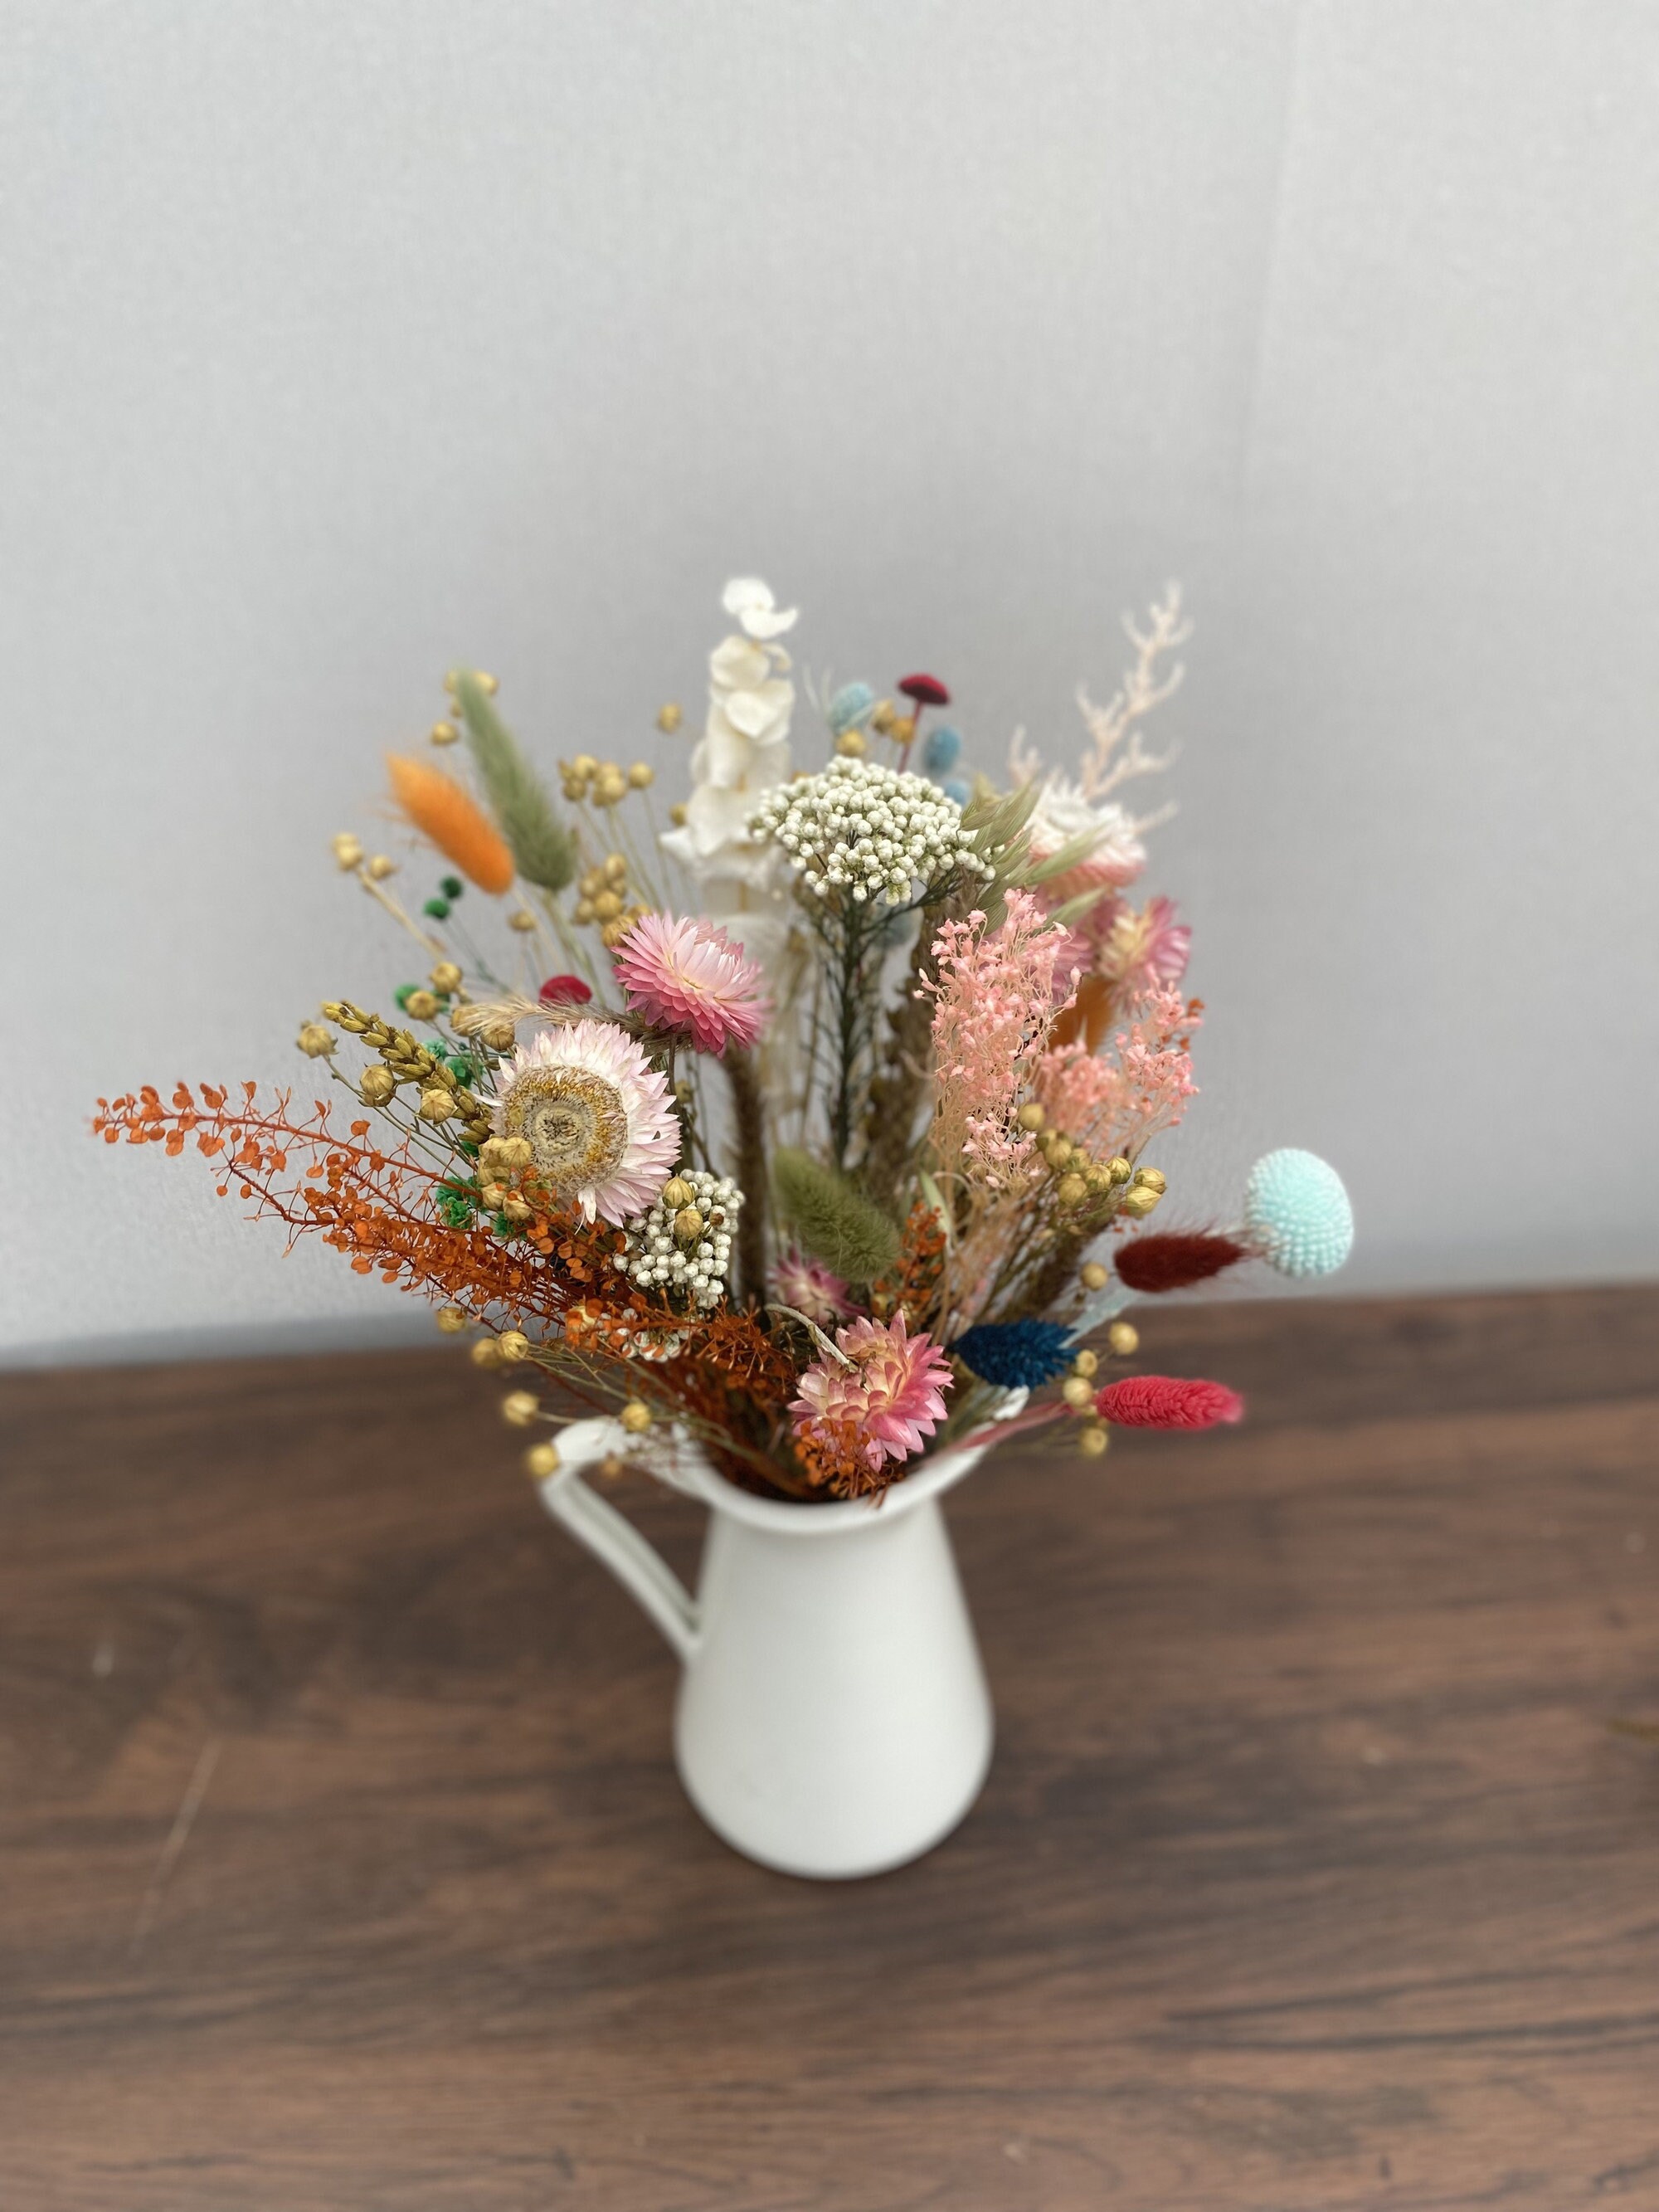 Petite Mini Colorful Dried Flower Bouquet, Dry Floral Bouquet, Natural  Everlasting Dry Flowers, Flower Arrangement, Cute Present 